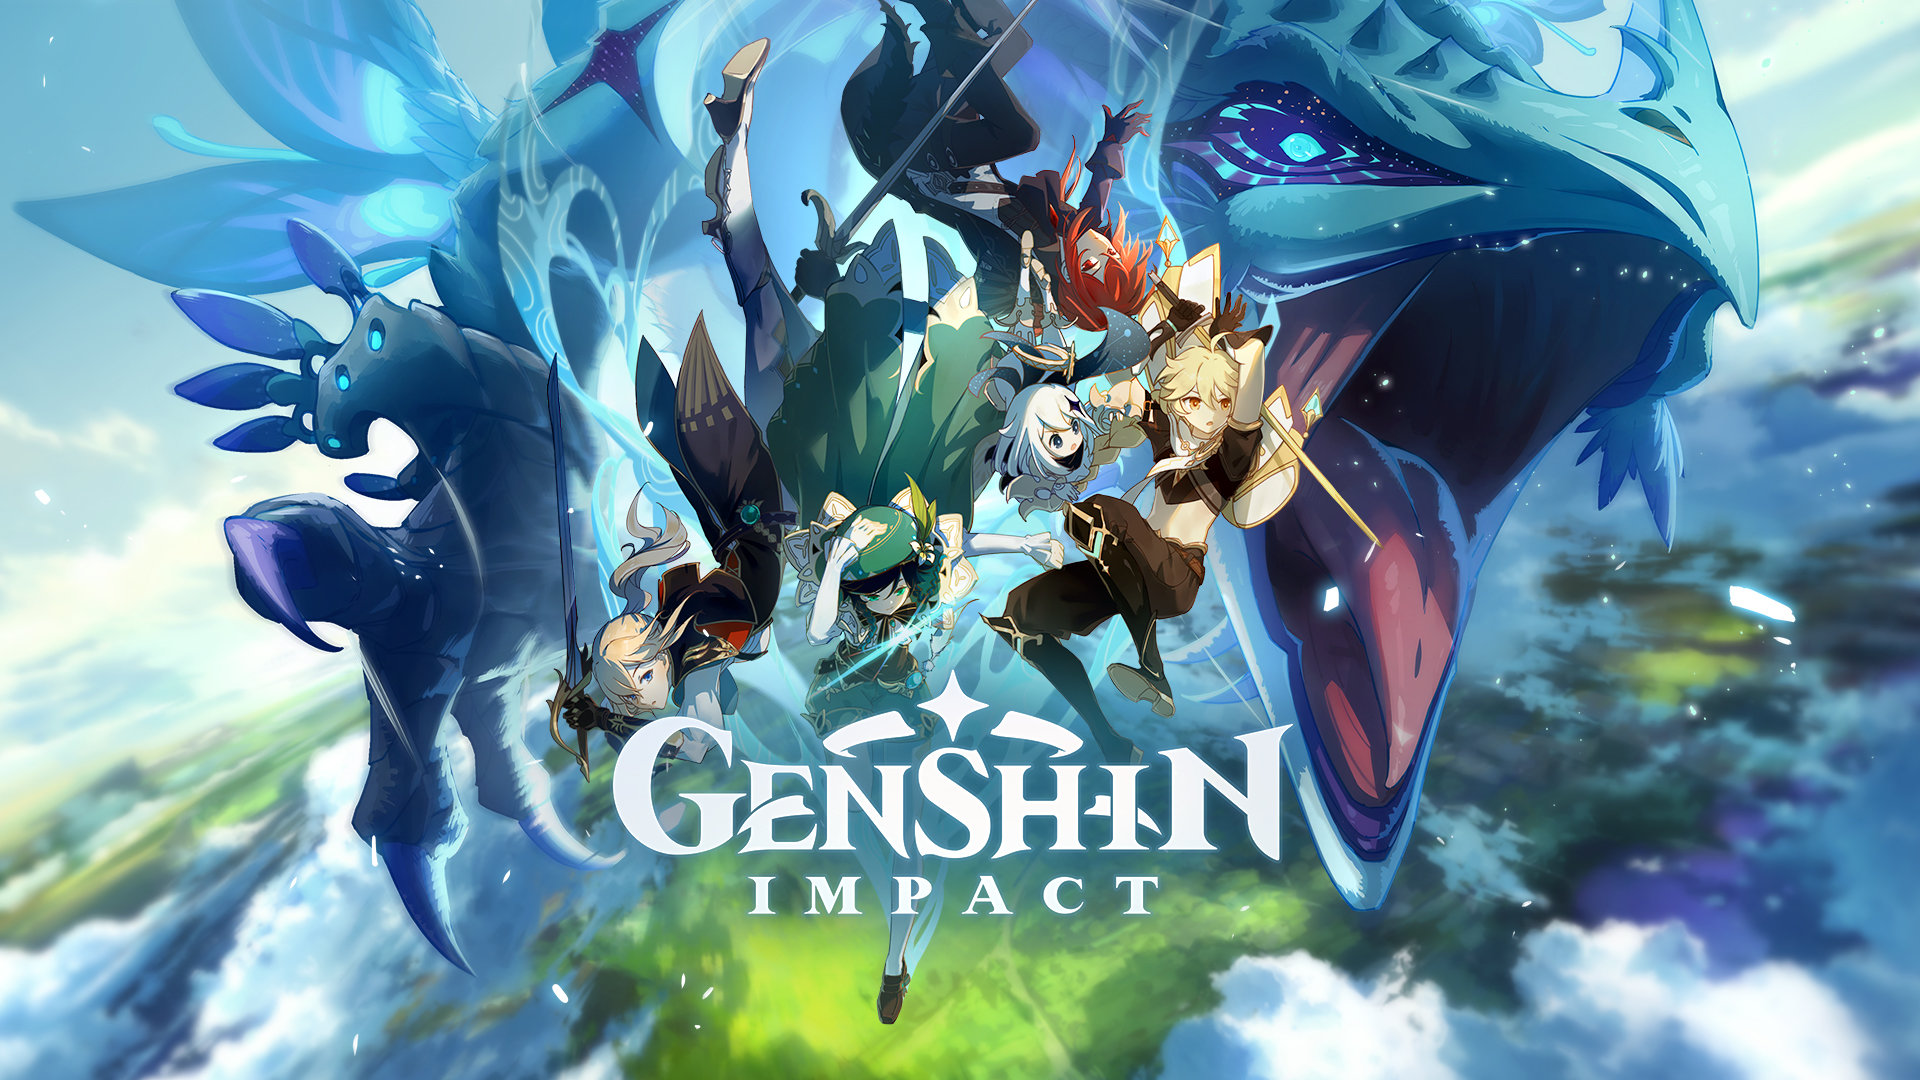 Melhores personagens de Genshin Impact - Game Lodge